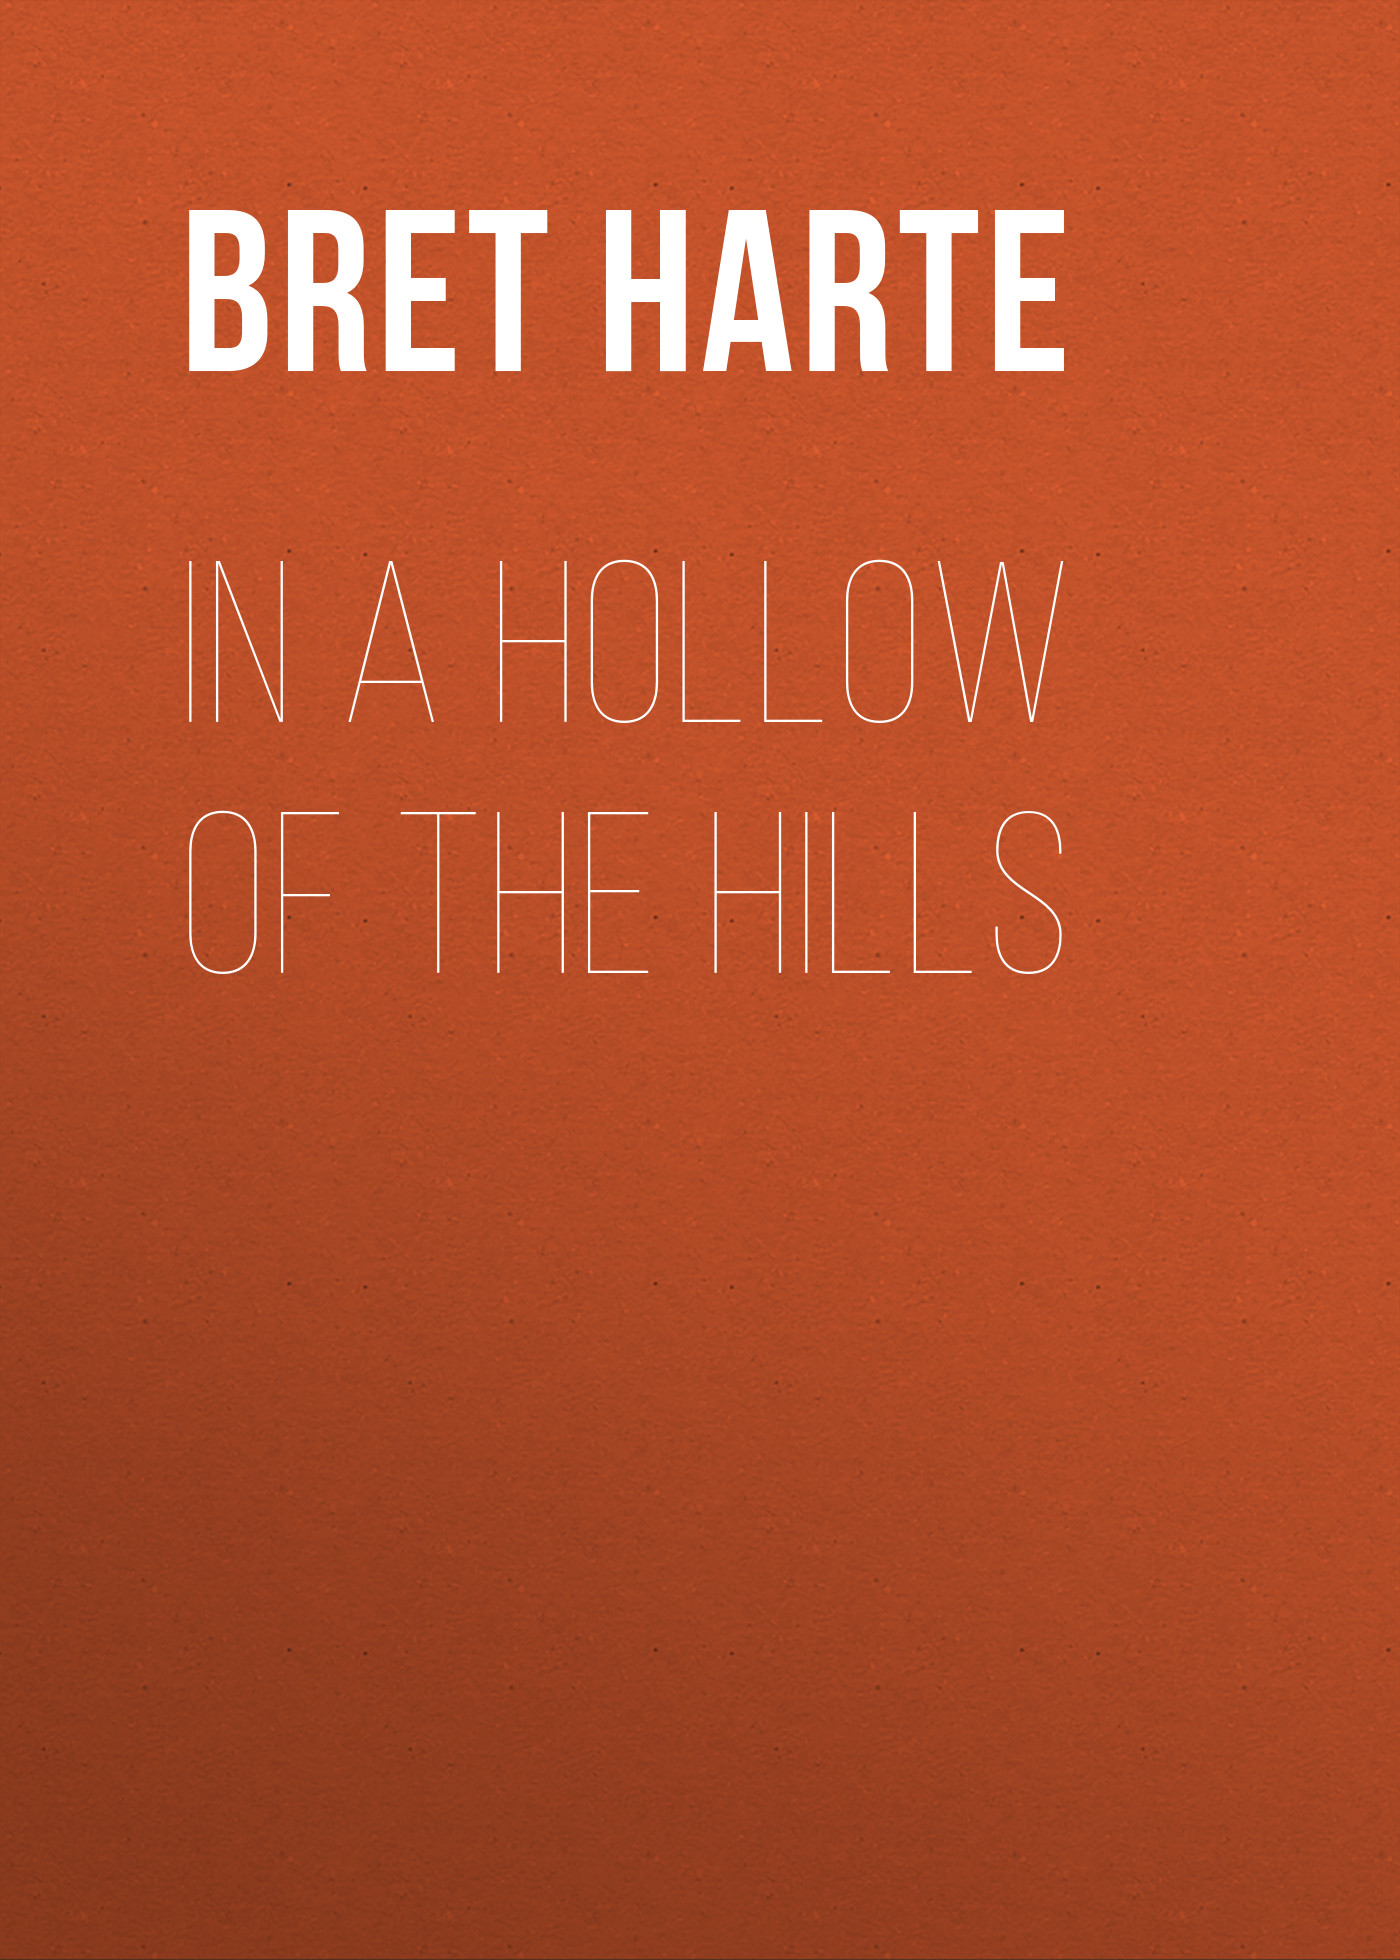 Книга In a Hollow of the Hills из серии , созданная Bret Harte, может относится к жанру Зарубежная фантастика, Литература 19 века, Зарубежная старинная литература, Зарубежная классика. Стоимость электронной книги In a Hollow of the Hills с идентификатором 36322276 составляет 0 руб.